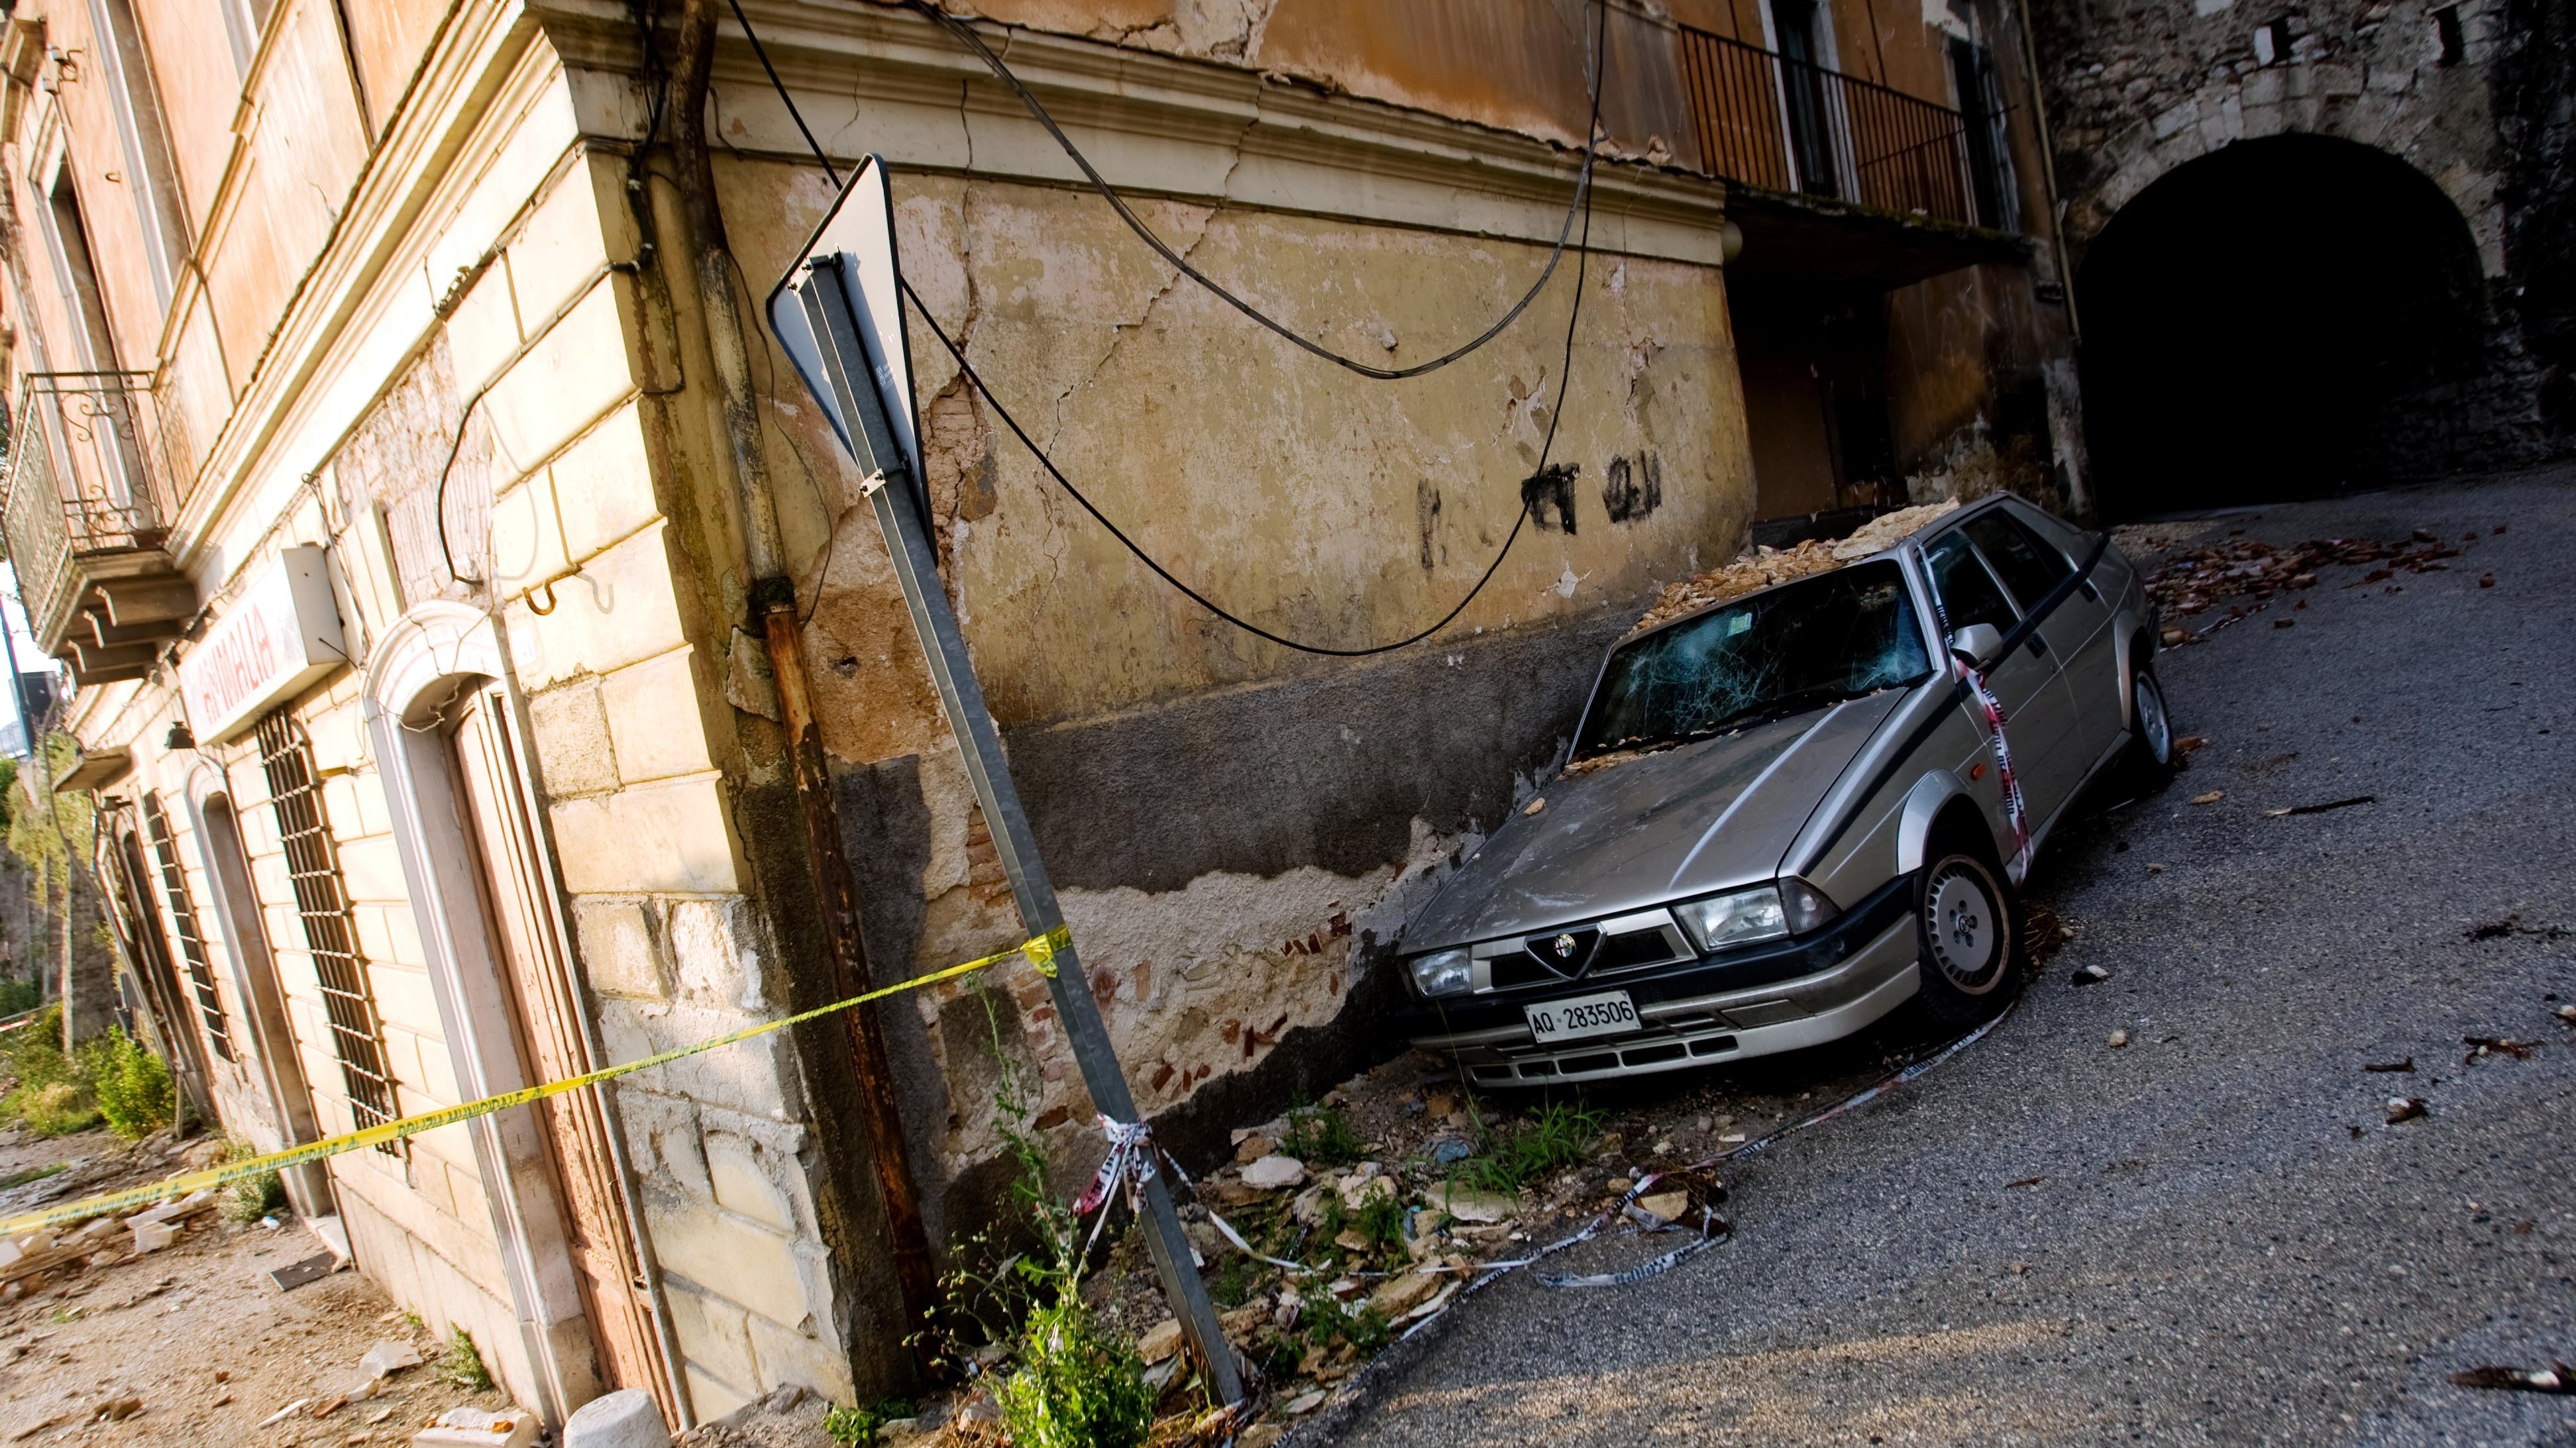 Taliansko sa spamätáva už z tretieho zemetrasenia, ktoré ovplyvnilo aj miestny cestovný ruch. 